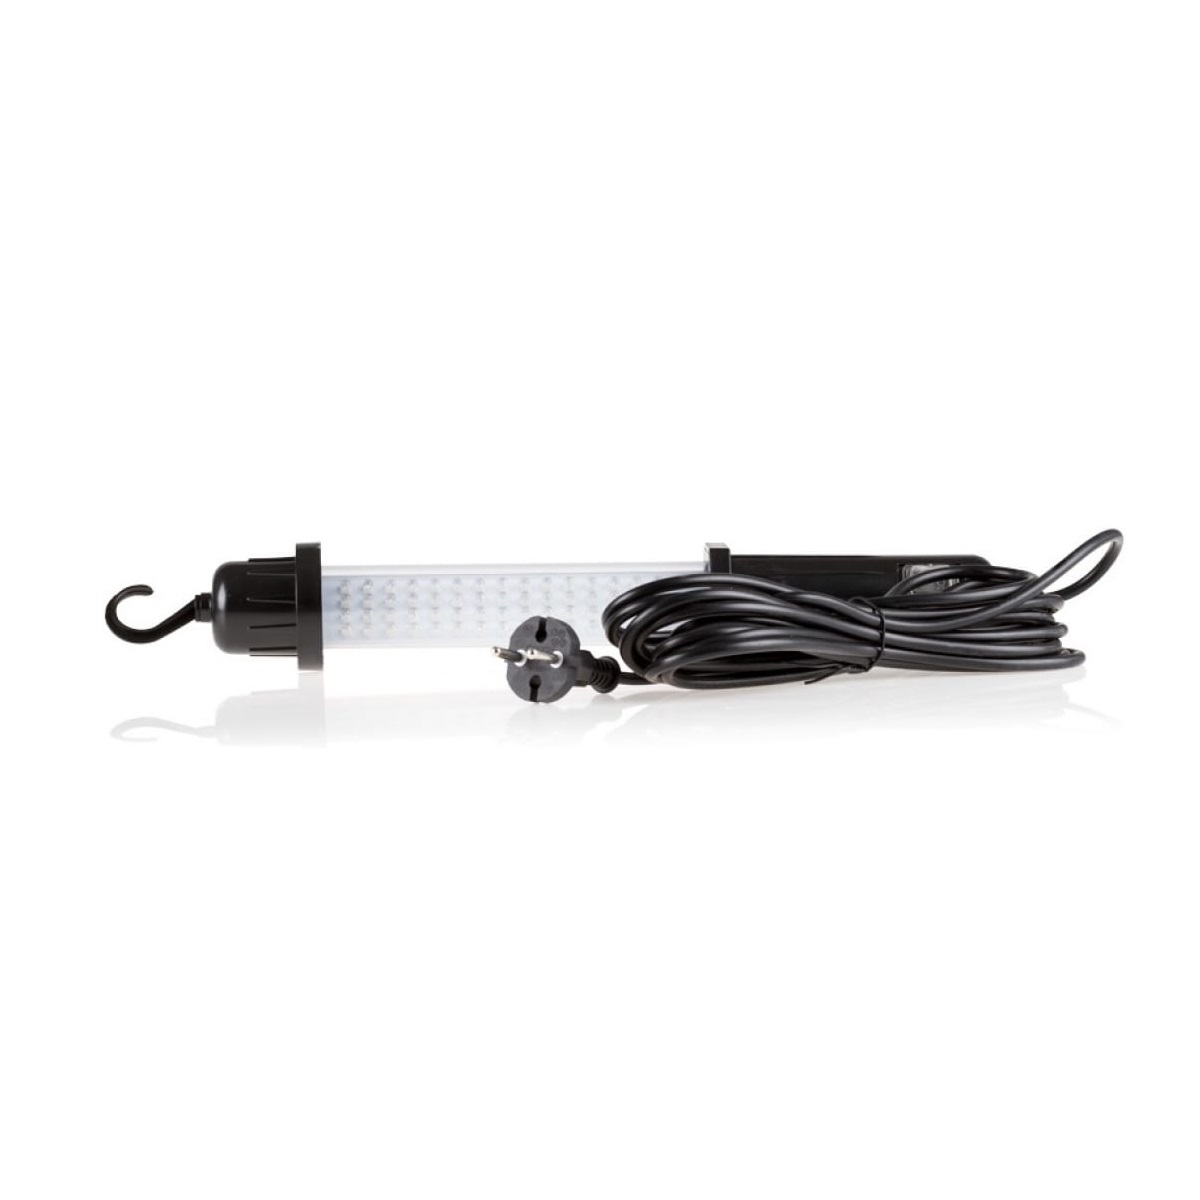 Лампа осмотровая Heyner led 220в длина кабеля 5 метров, цвет черный - фото 1